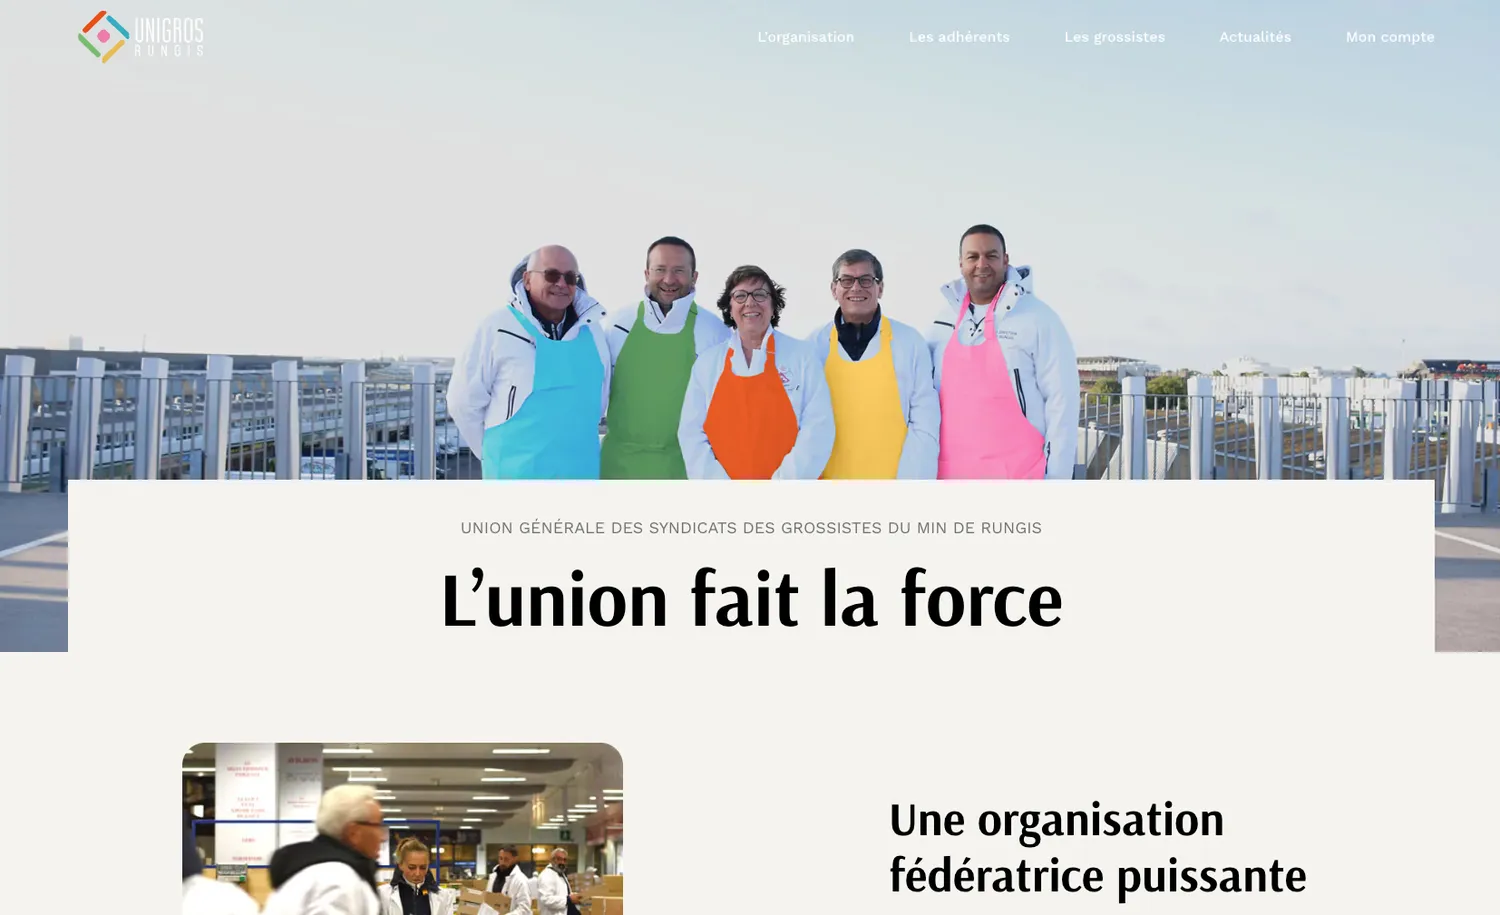 Création du site UNIGROS, le site de 11 syndicats de grossistes du marché de Rungis